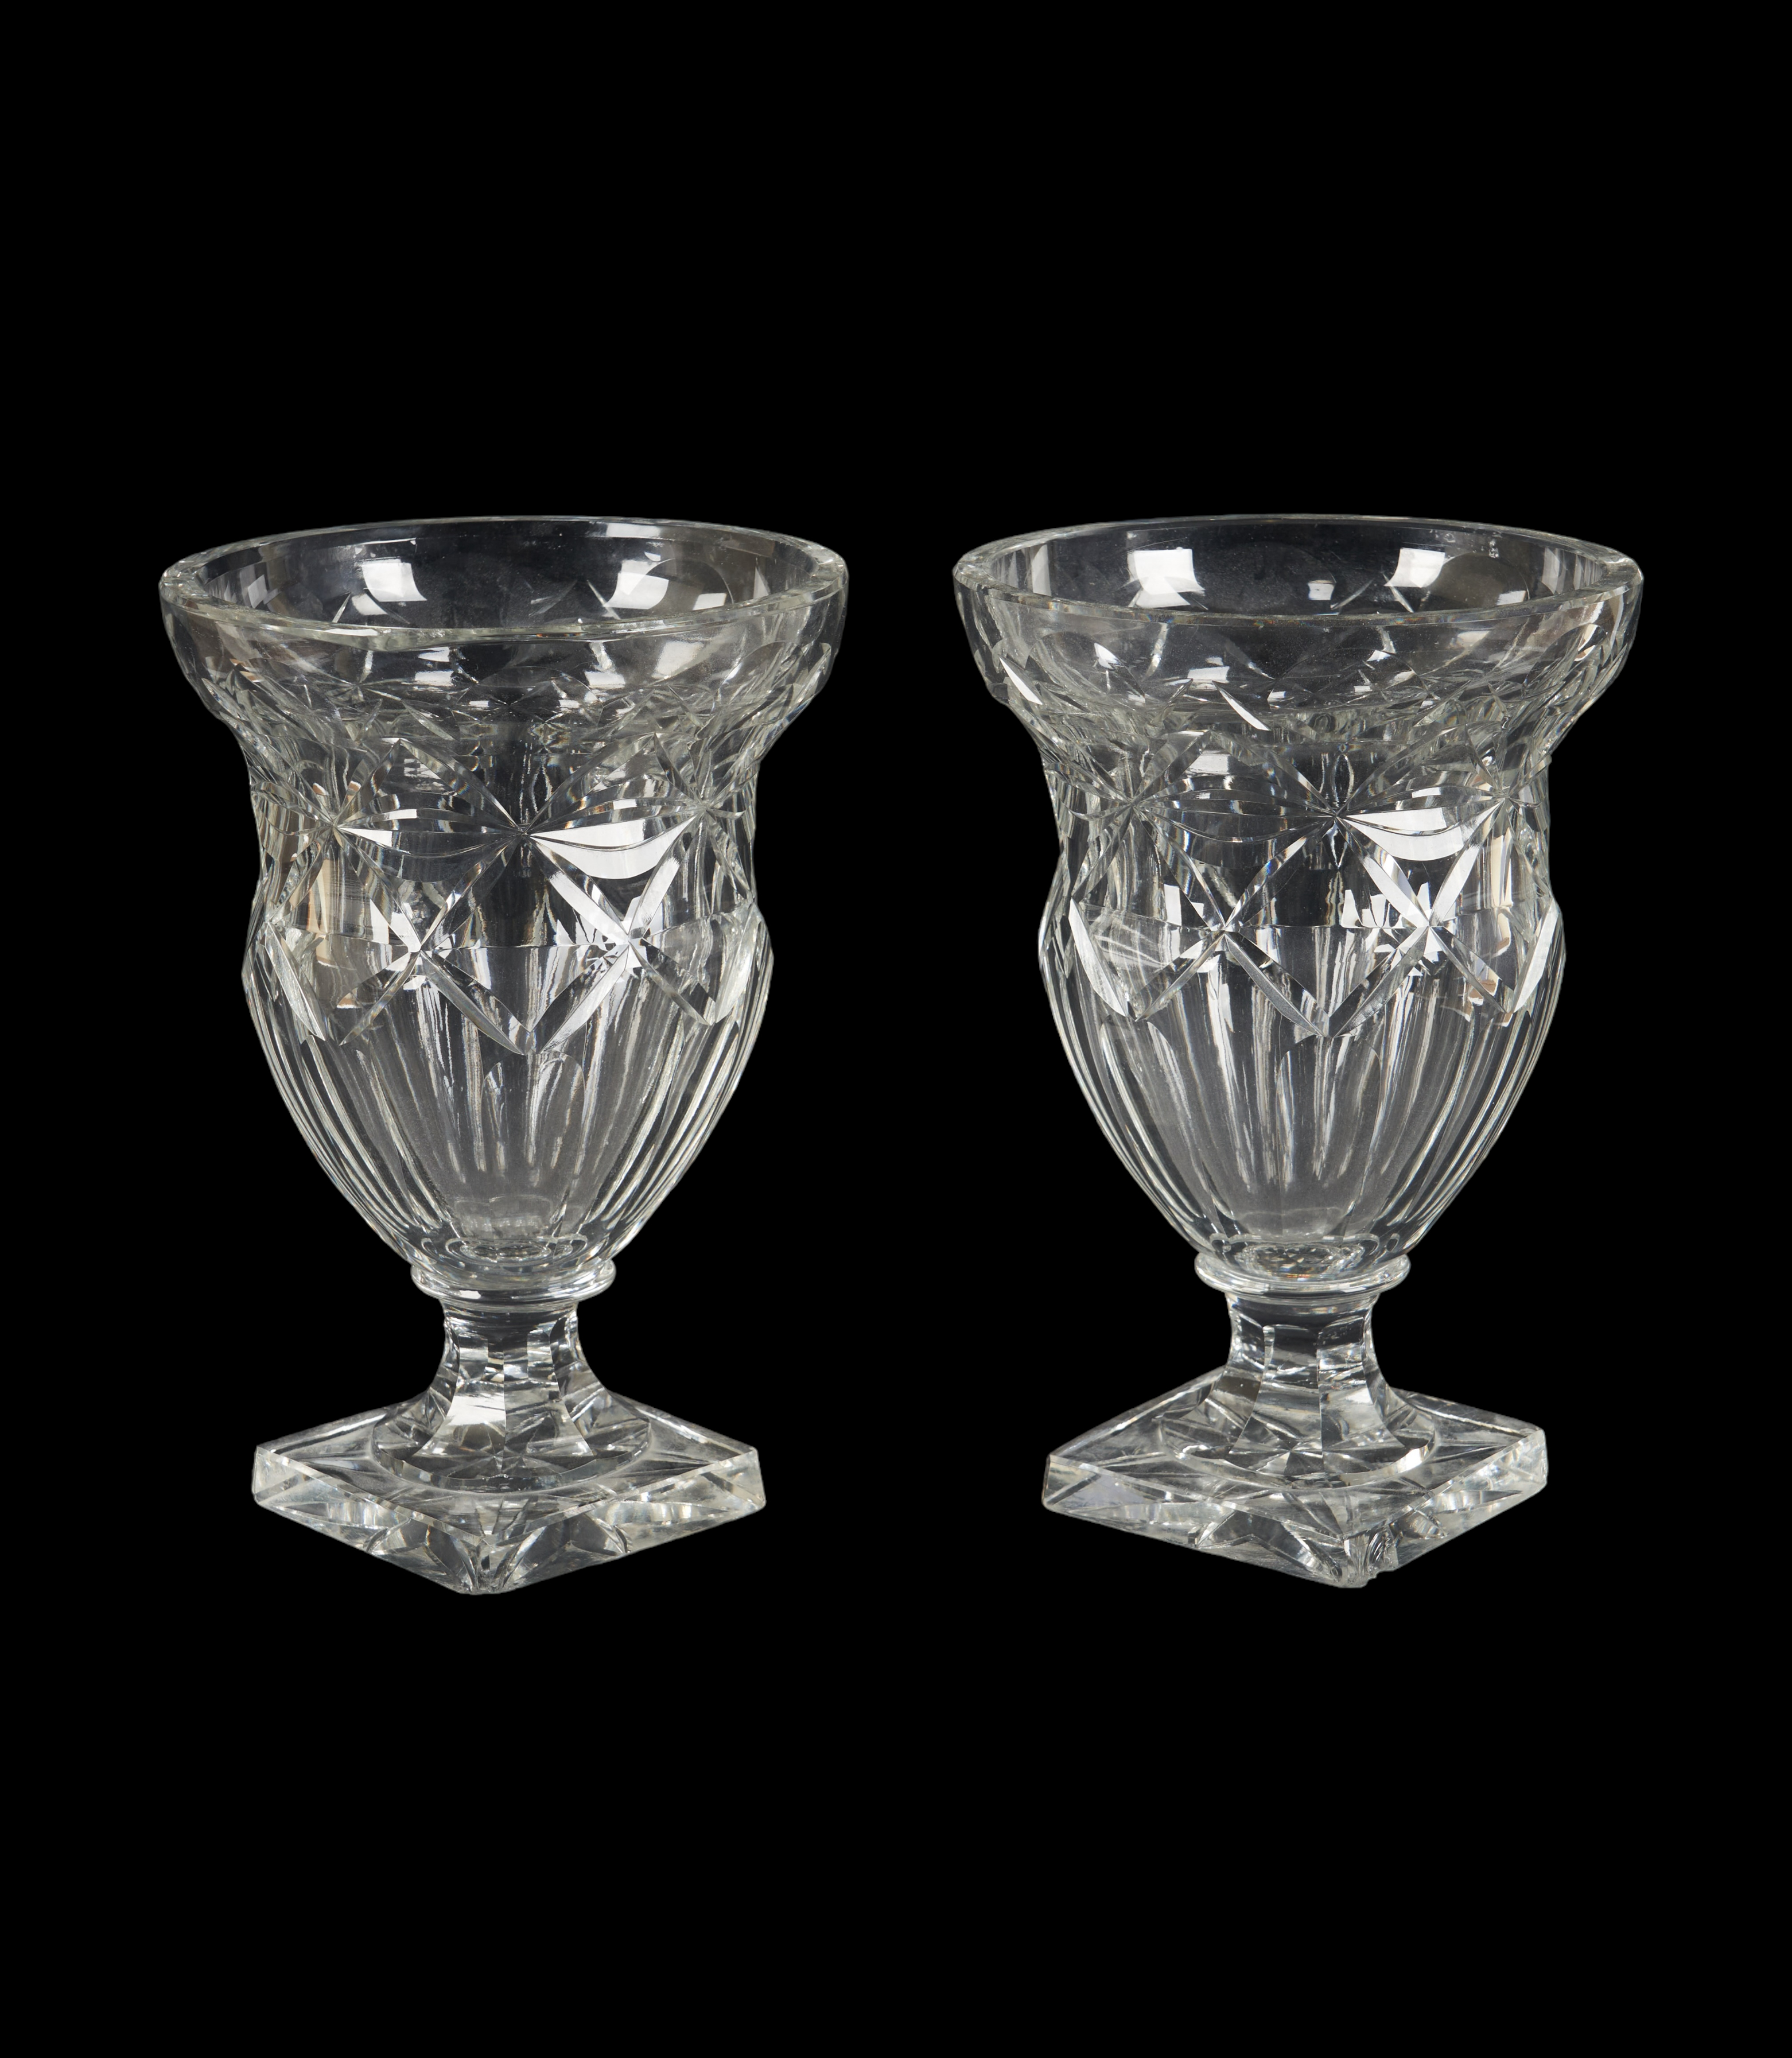 19th C cut glass urn pair, raised